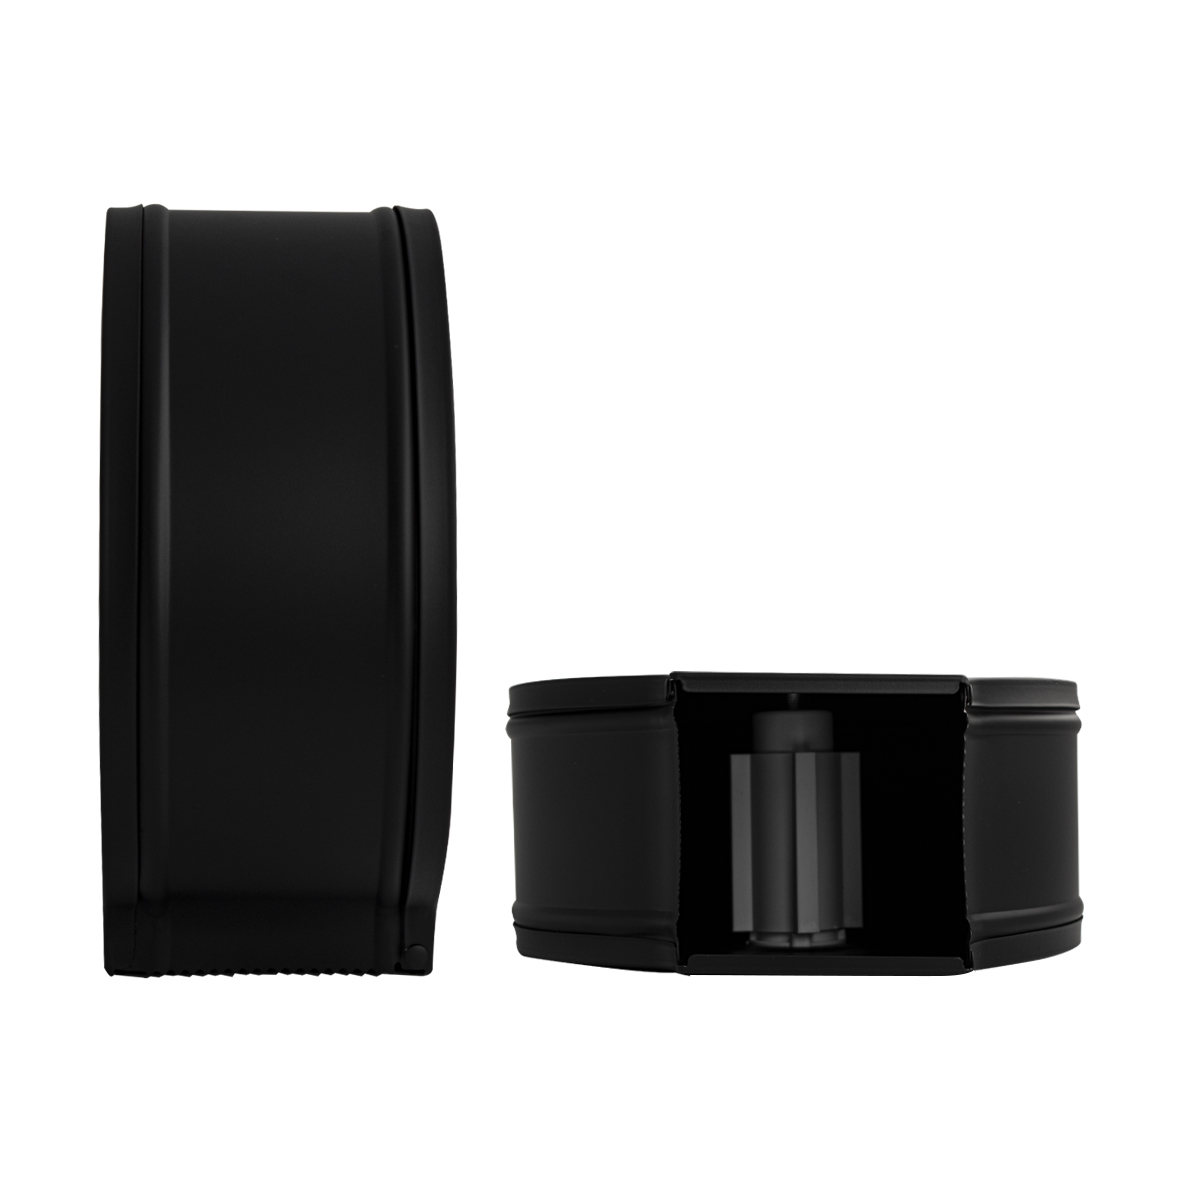 BRIMIX - Диспенсер для туалетной бумаги, с ключом - барабан, нержавеющая матовая сталь черного цвета